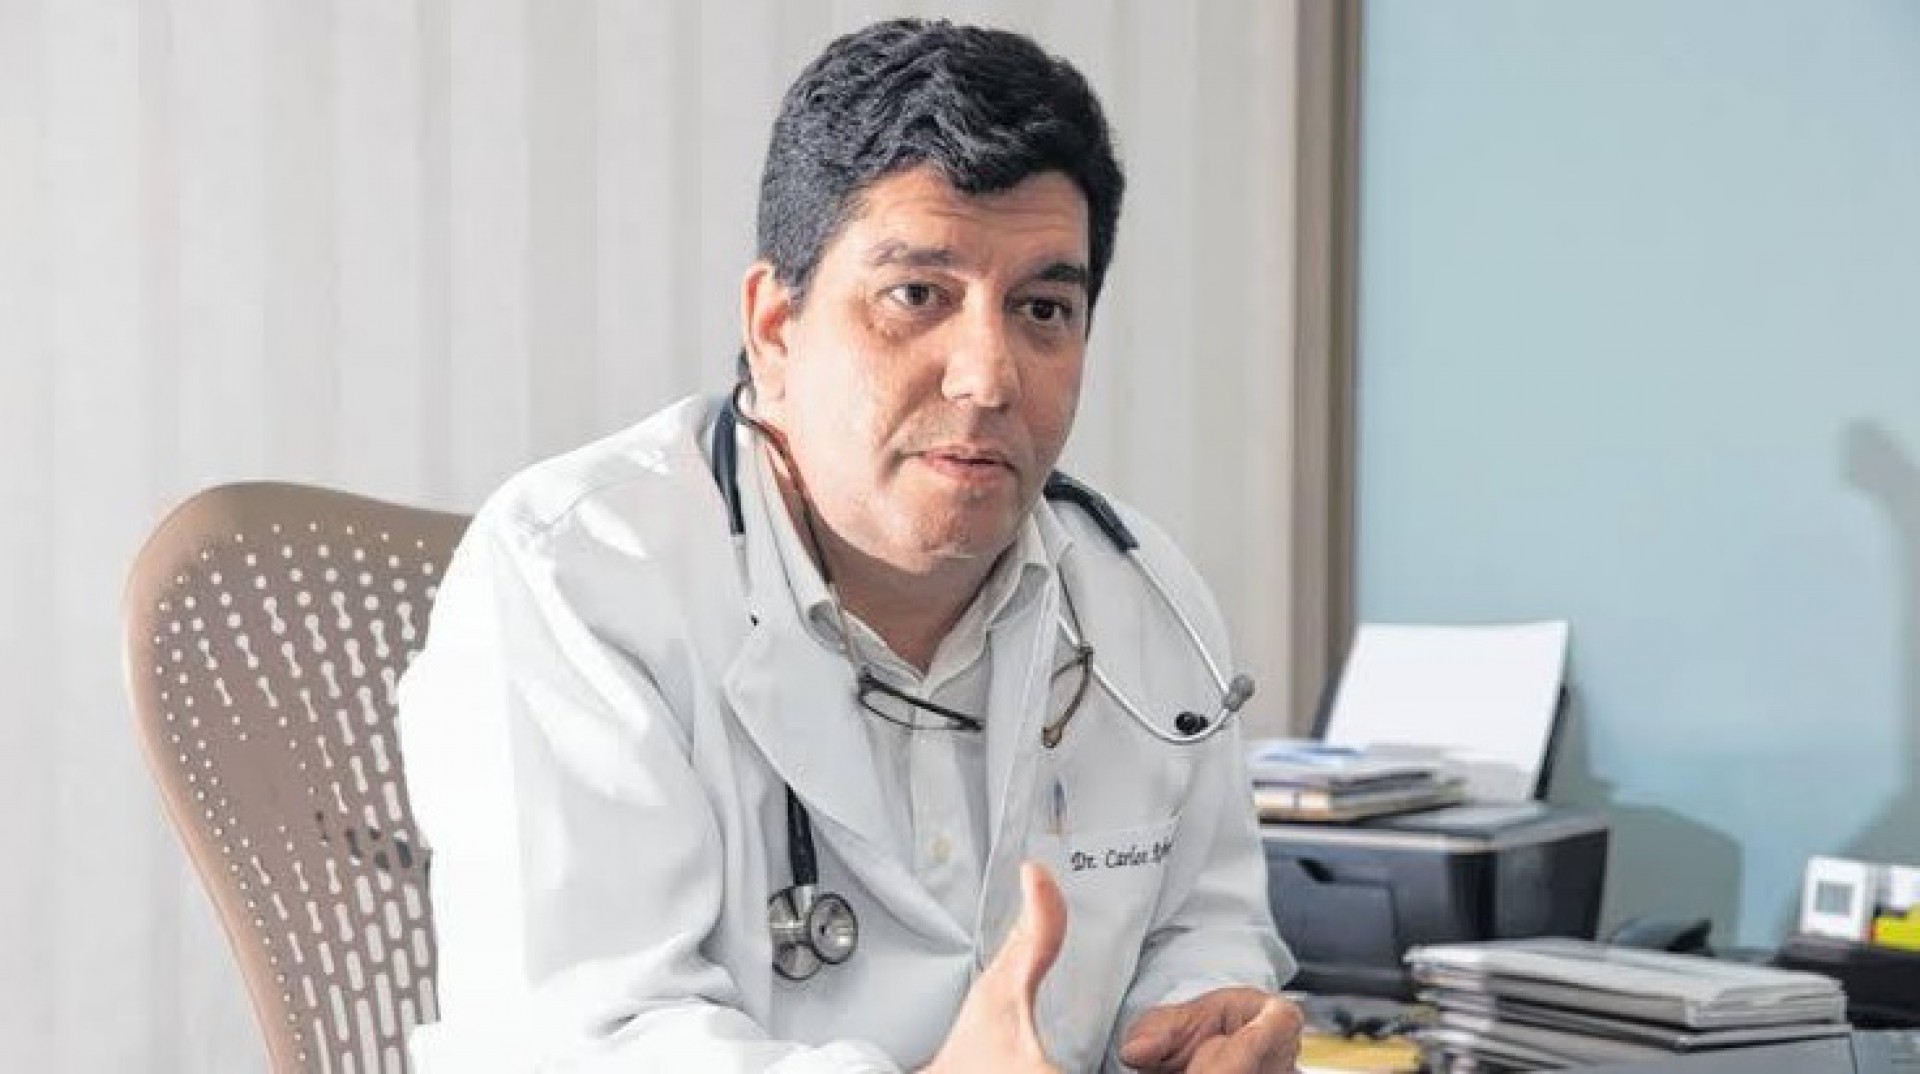 Dr. Cabeto é médico e ex-secretário da Saúde do Ceará (Foto: DIVULGAÇÃO)